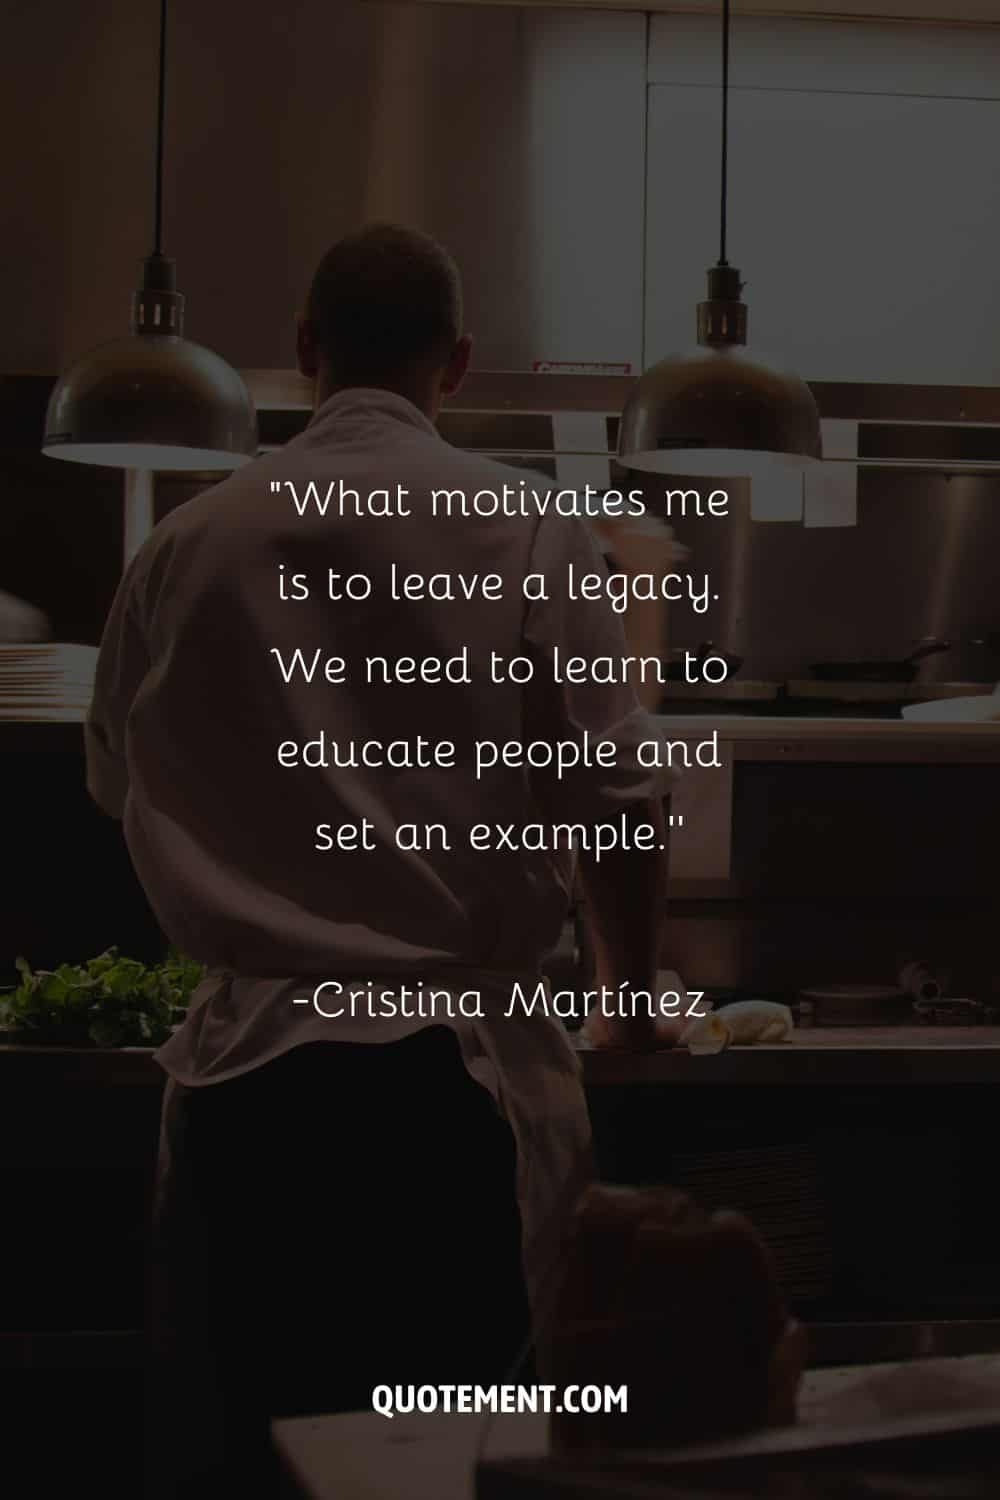 Imagen de un chef creando delicias gastronómicas representando una cita motivacional de restaurante